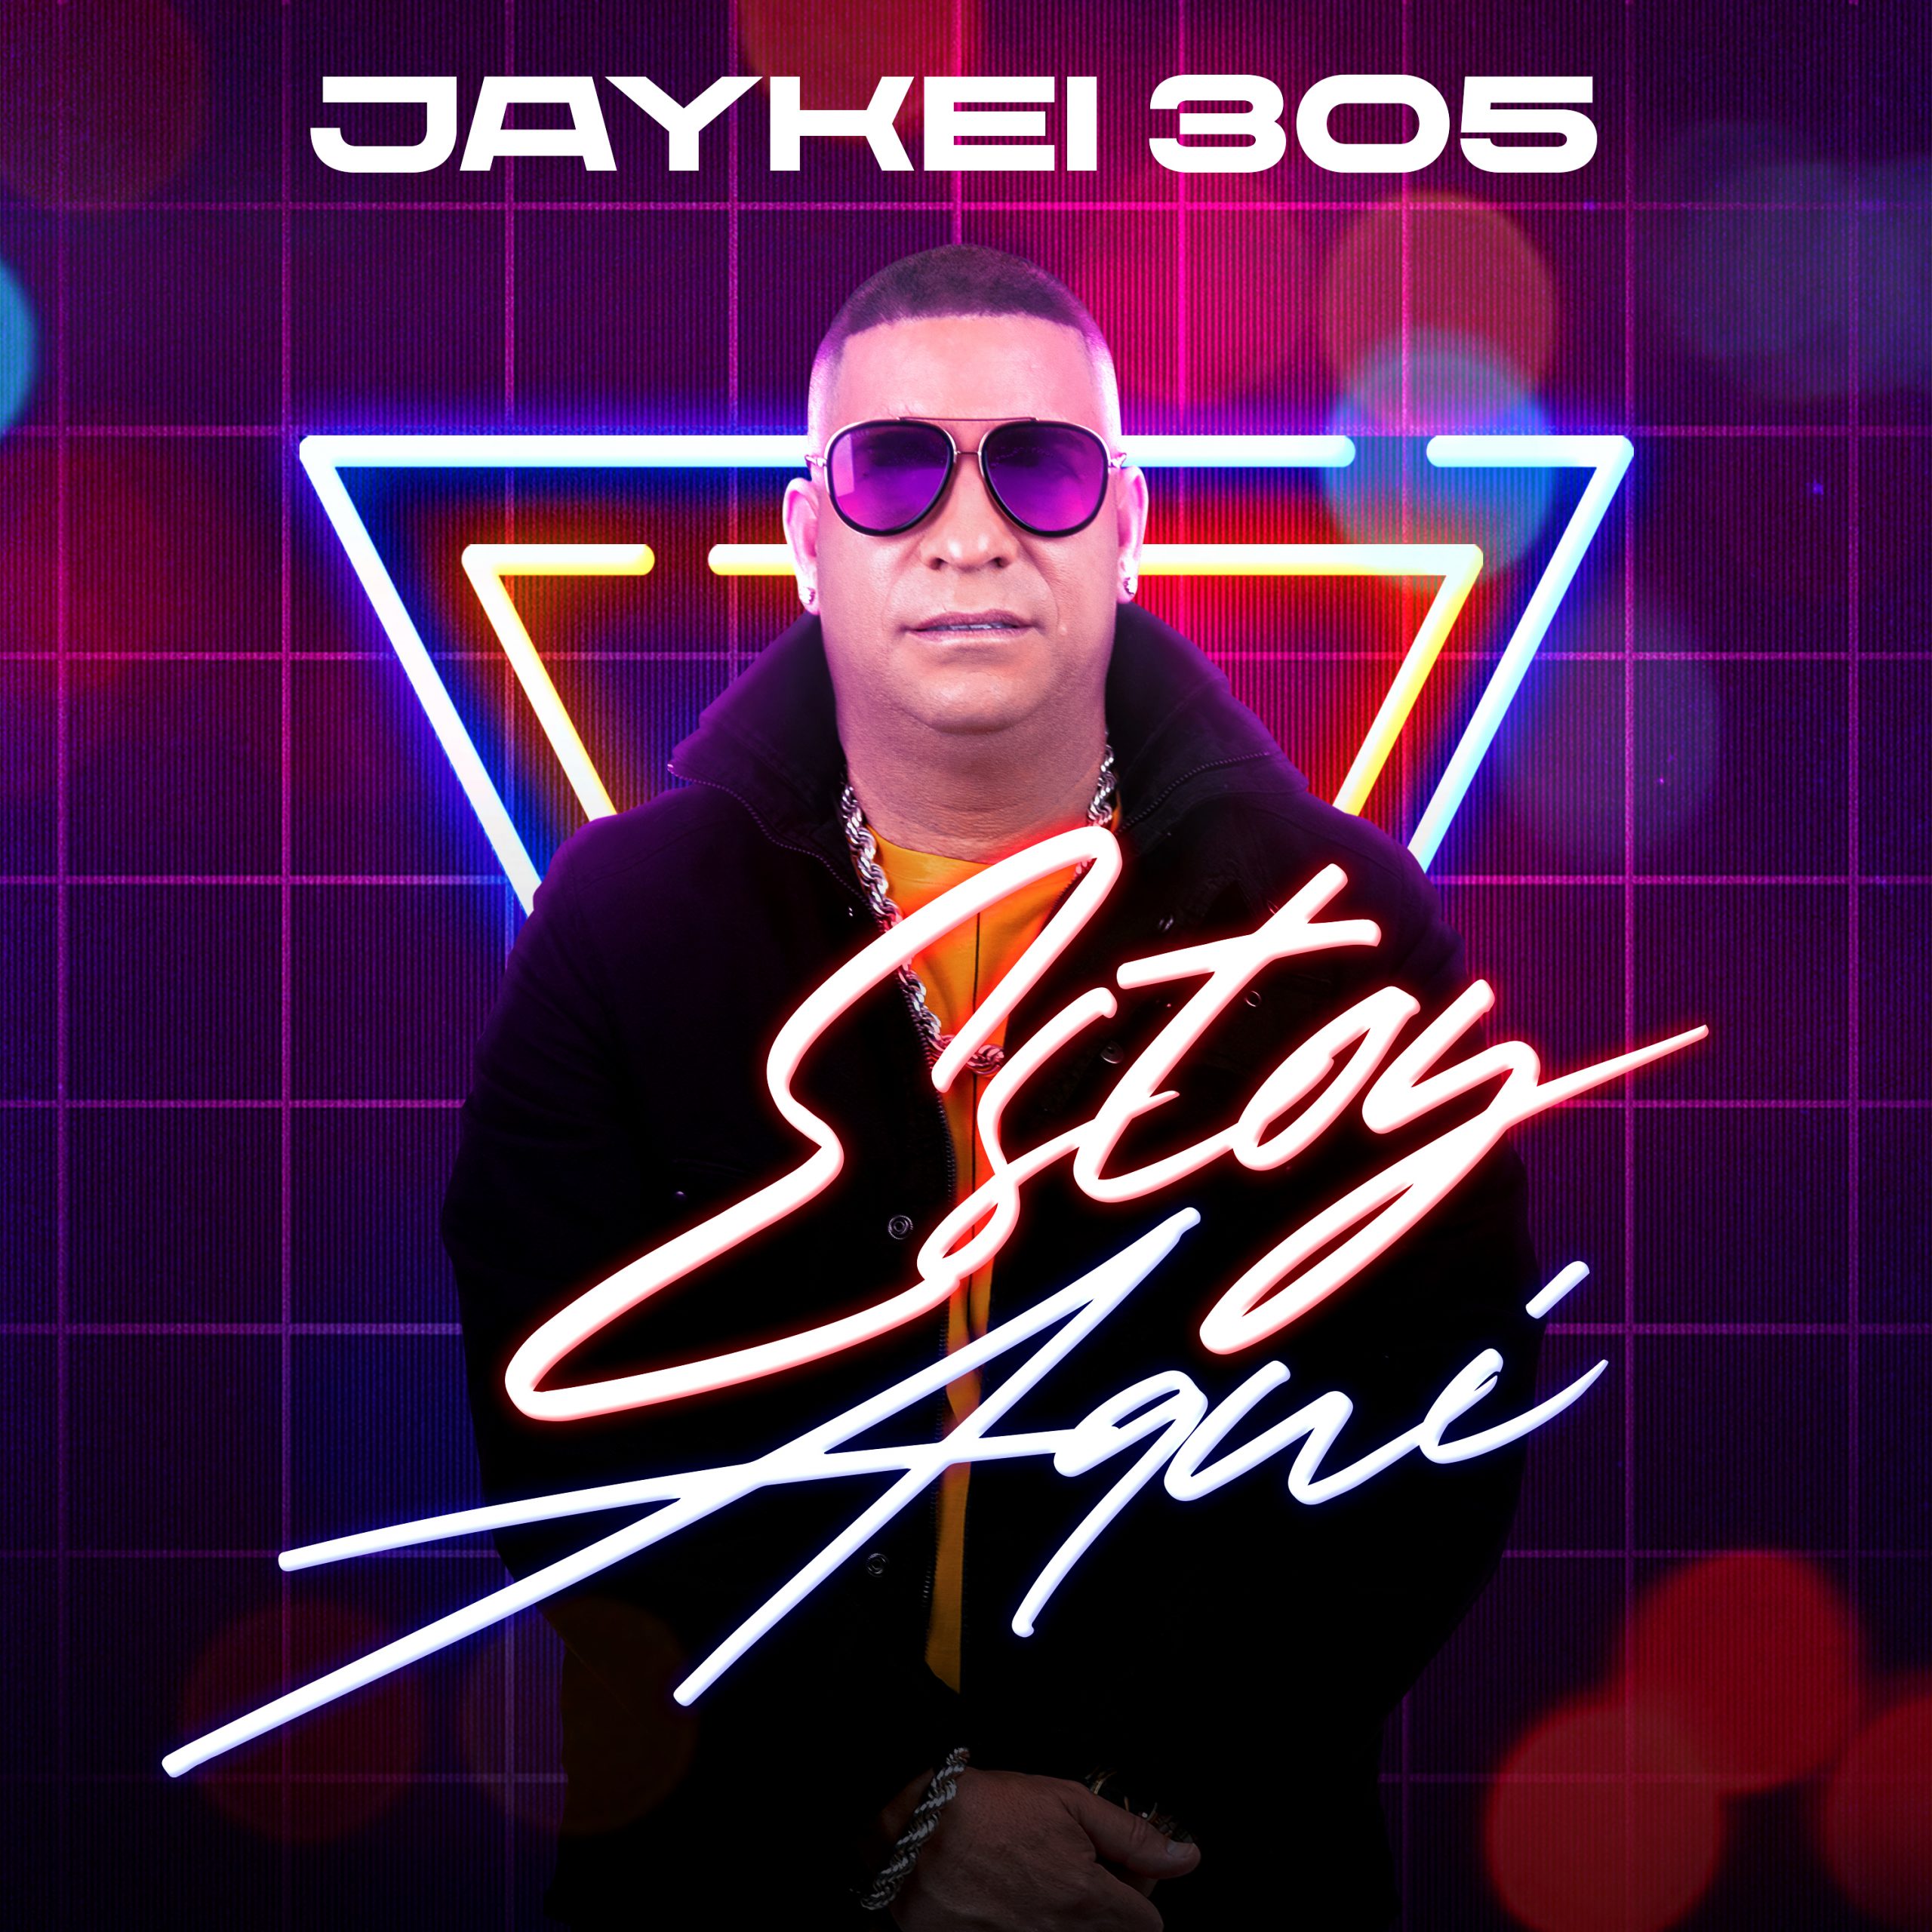 Jaykei 305 presenta su nuevo sencillo “Estoy Aquí”